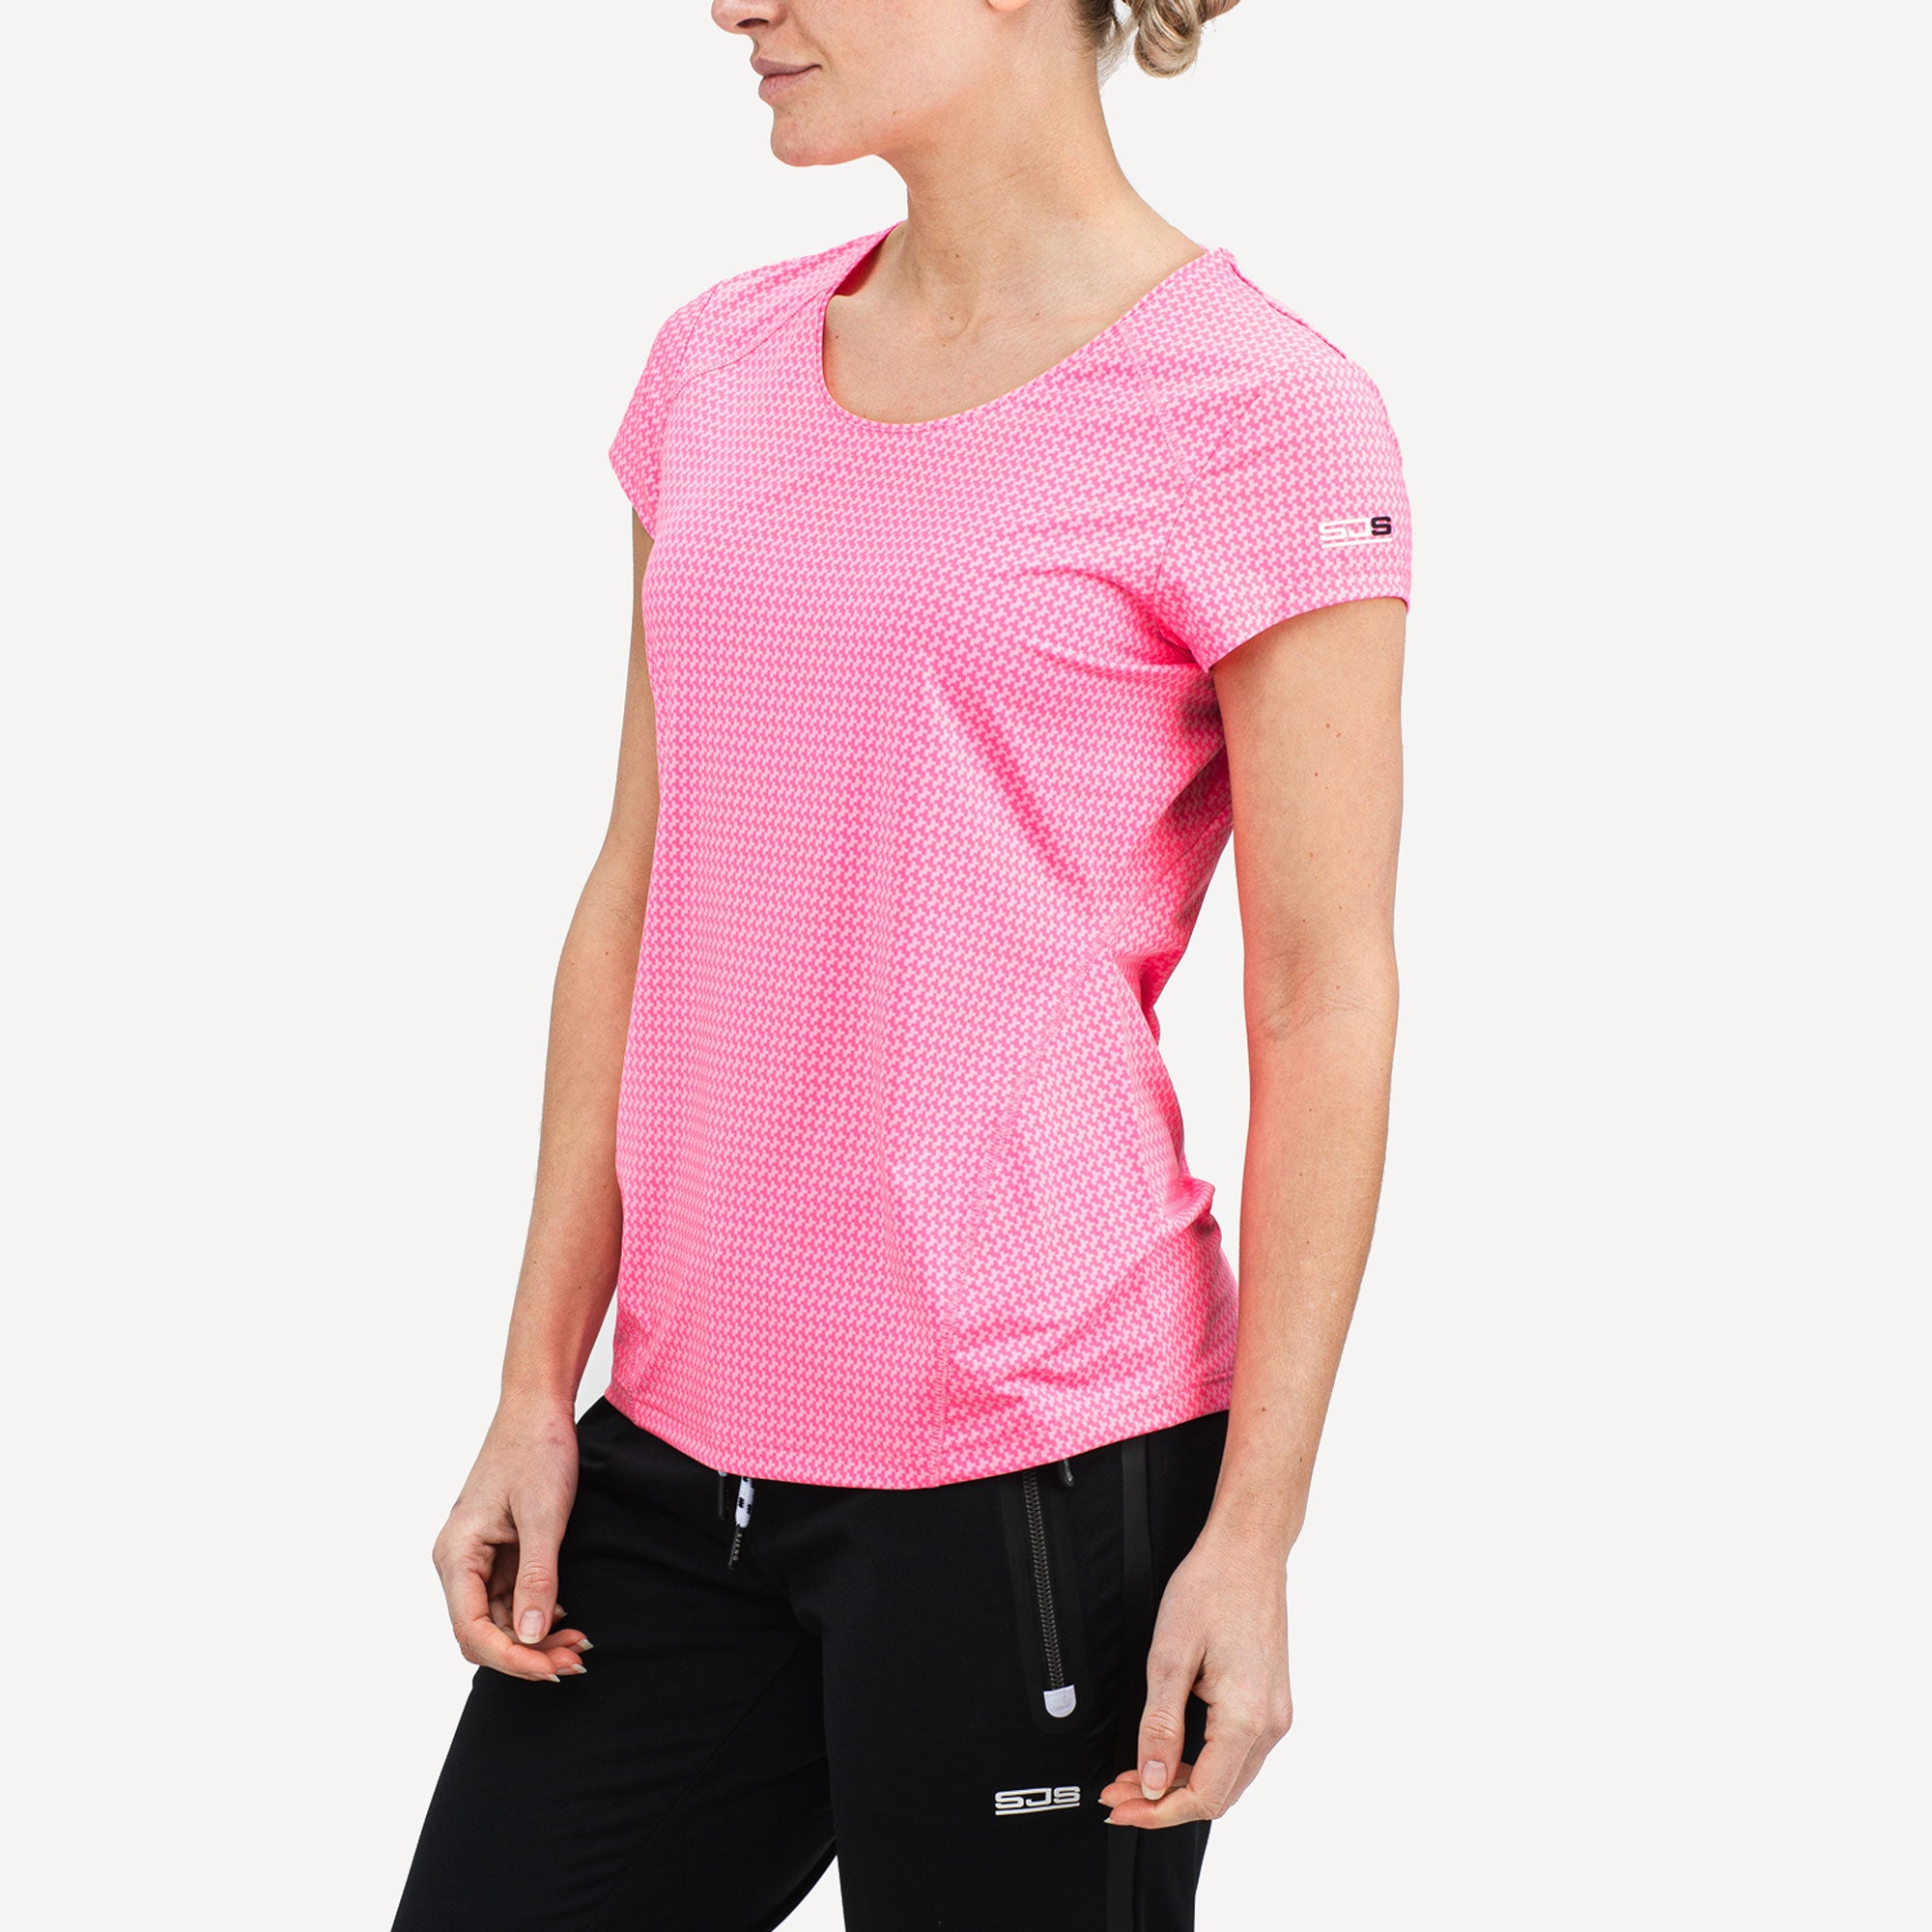 Sjeng Sports Evelyn Women's Tennis Shirt Pink (1)